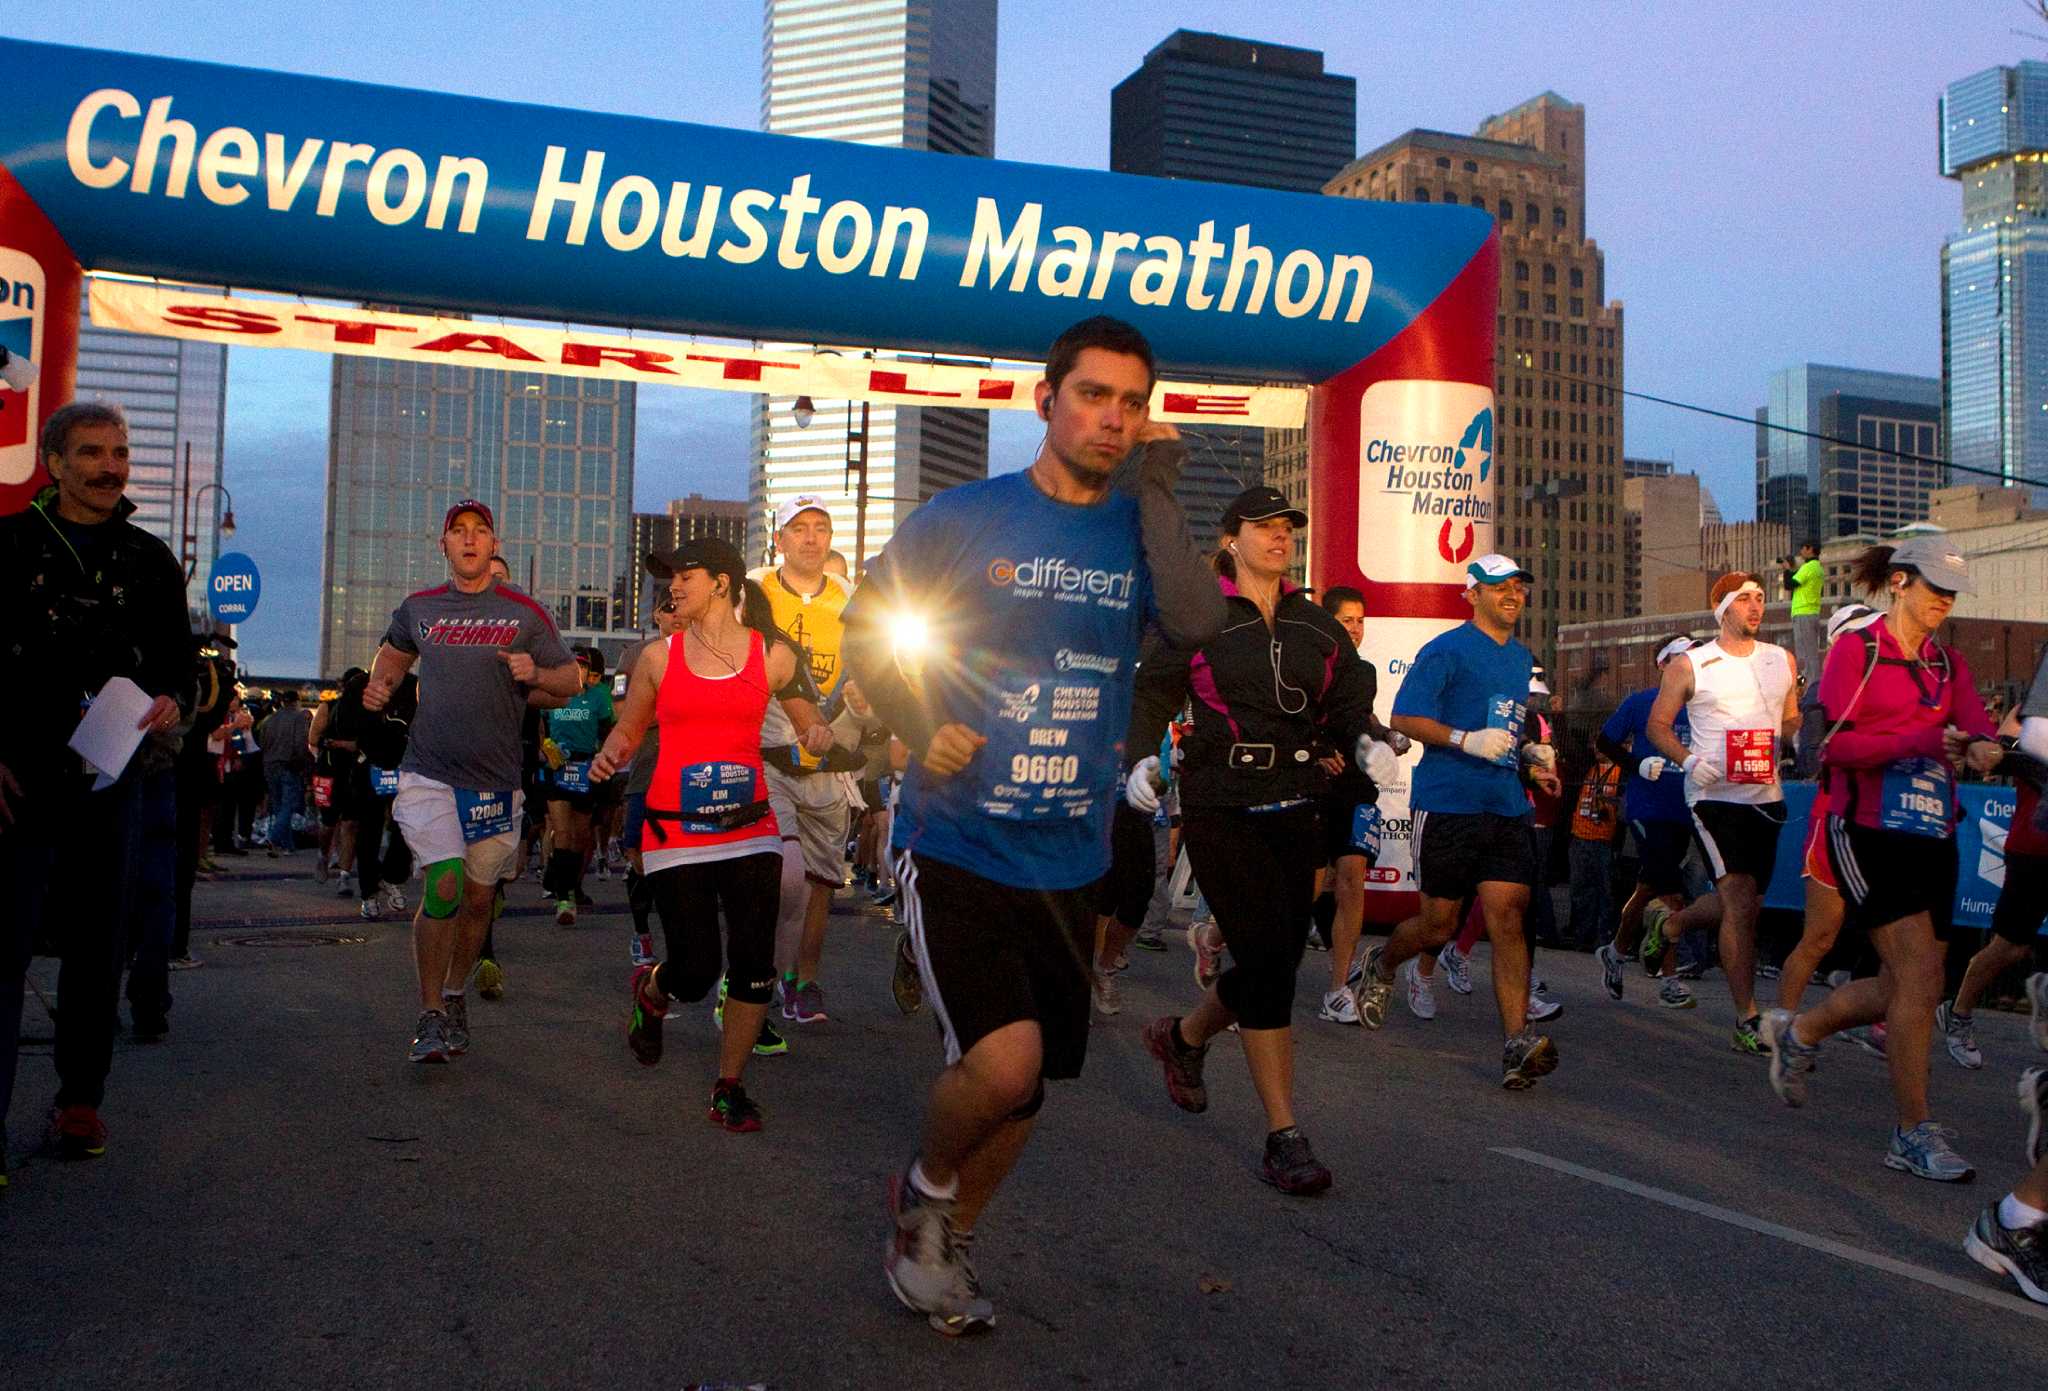 Home - Chevron Houston Marathon